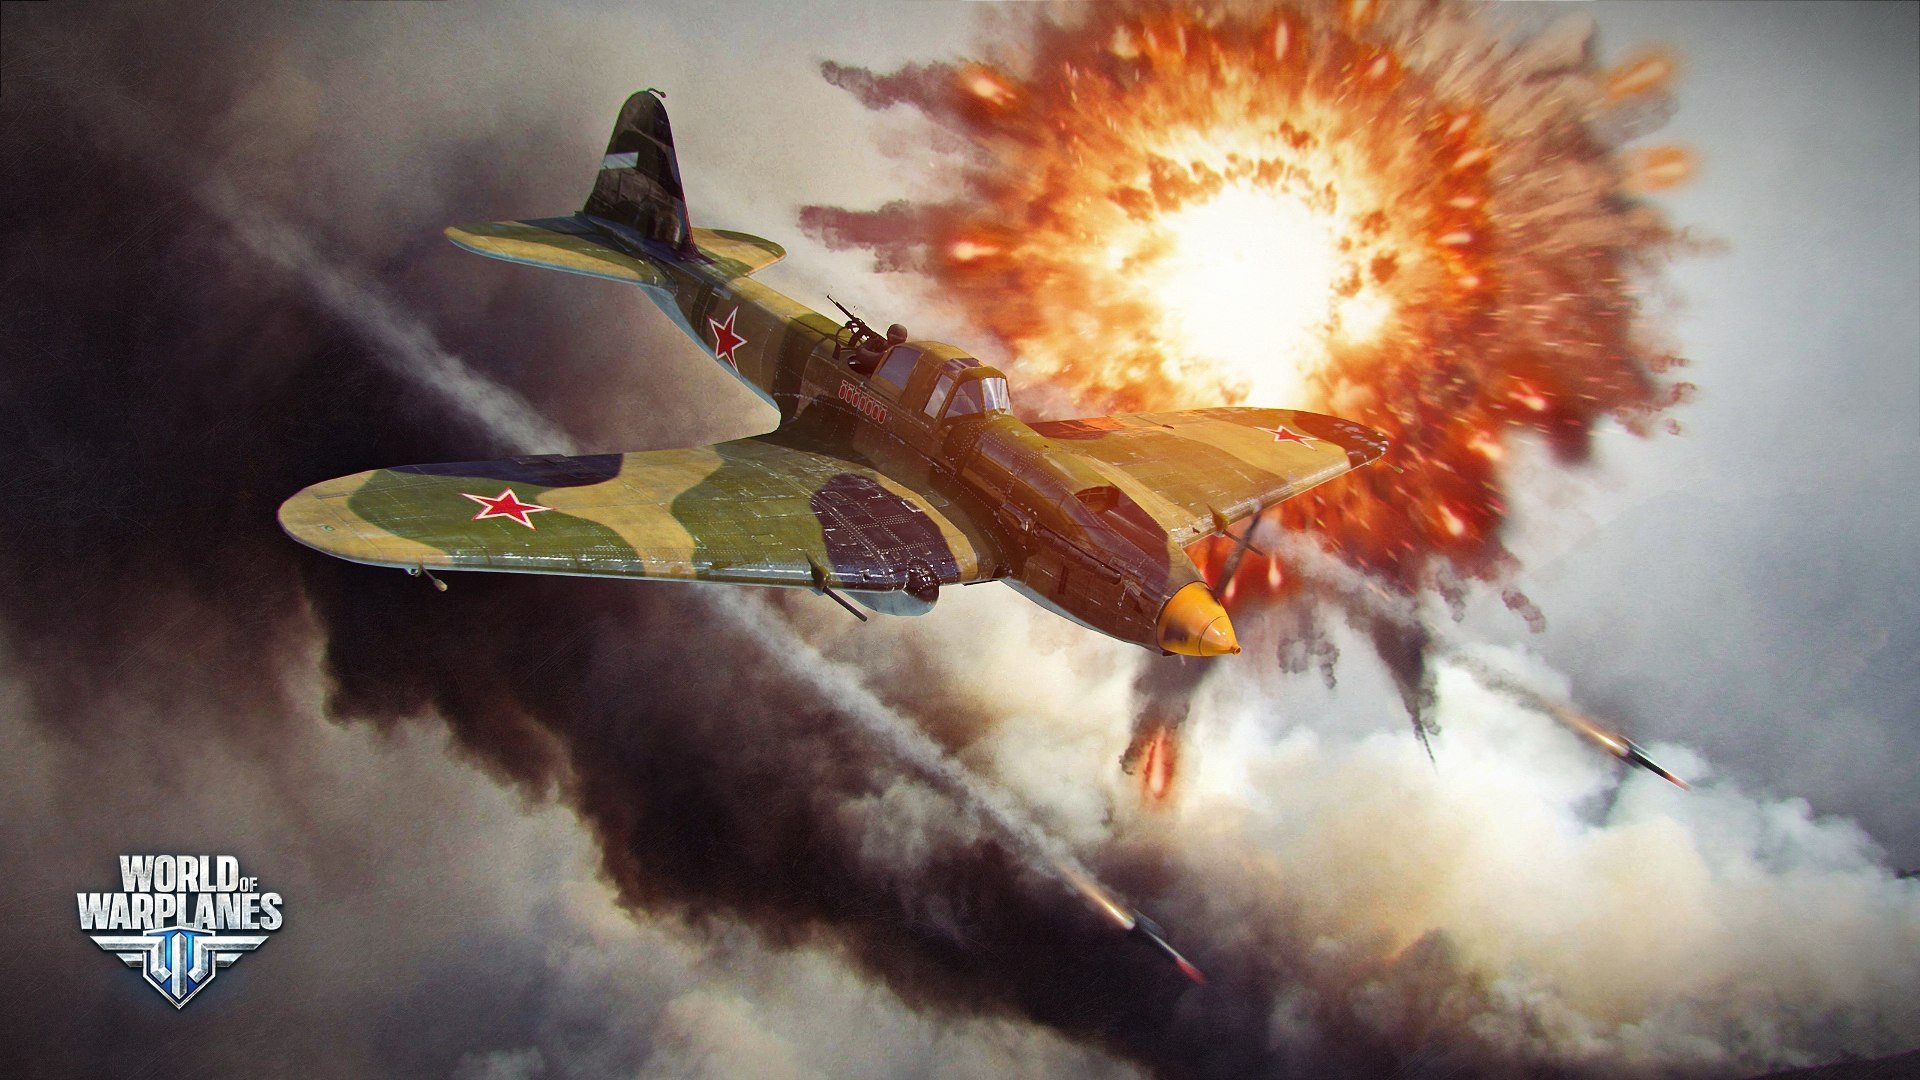 World of Warplanes, Warplanes, Airplane, Wargaming, Video games, IL 2 Sturmovik Wallpaper